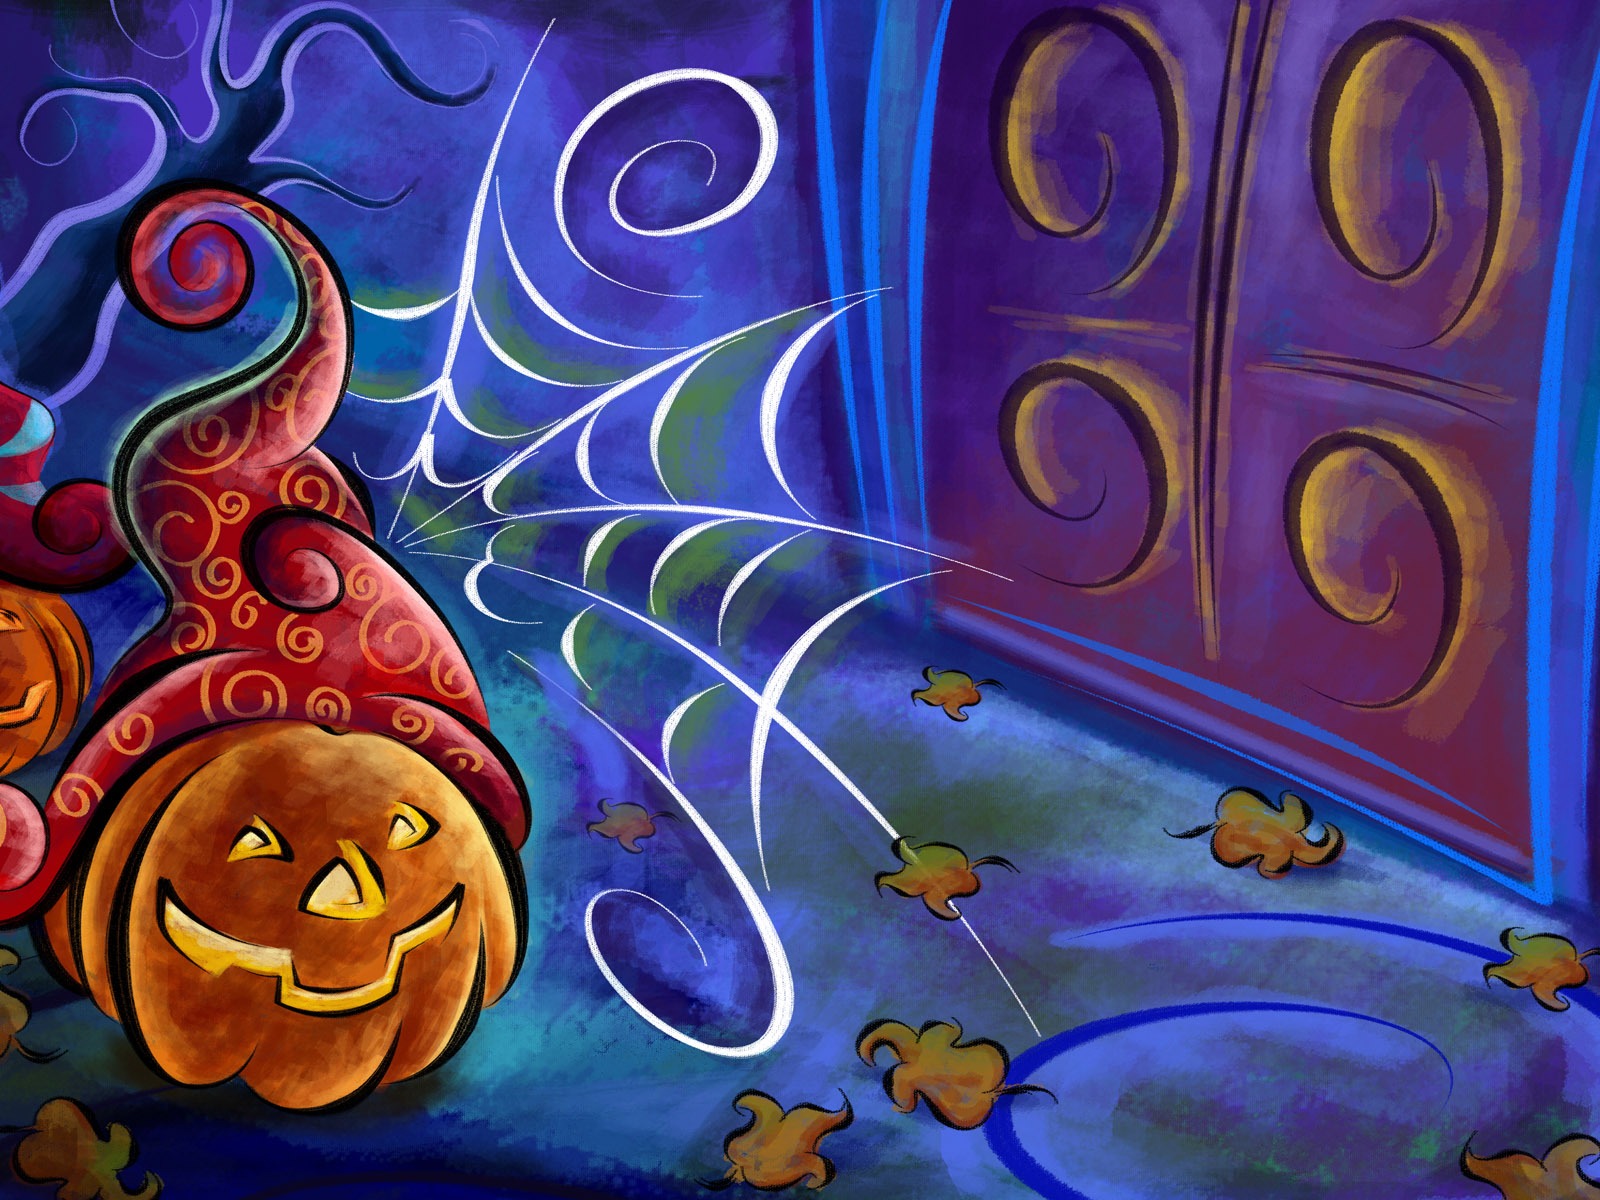 Fondos de Halloween temáticos (5) #16 - 1600x1200